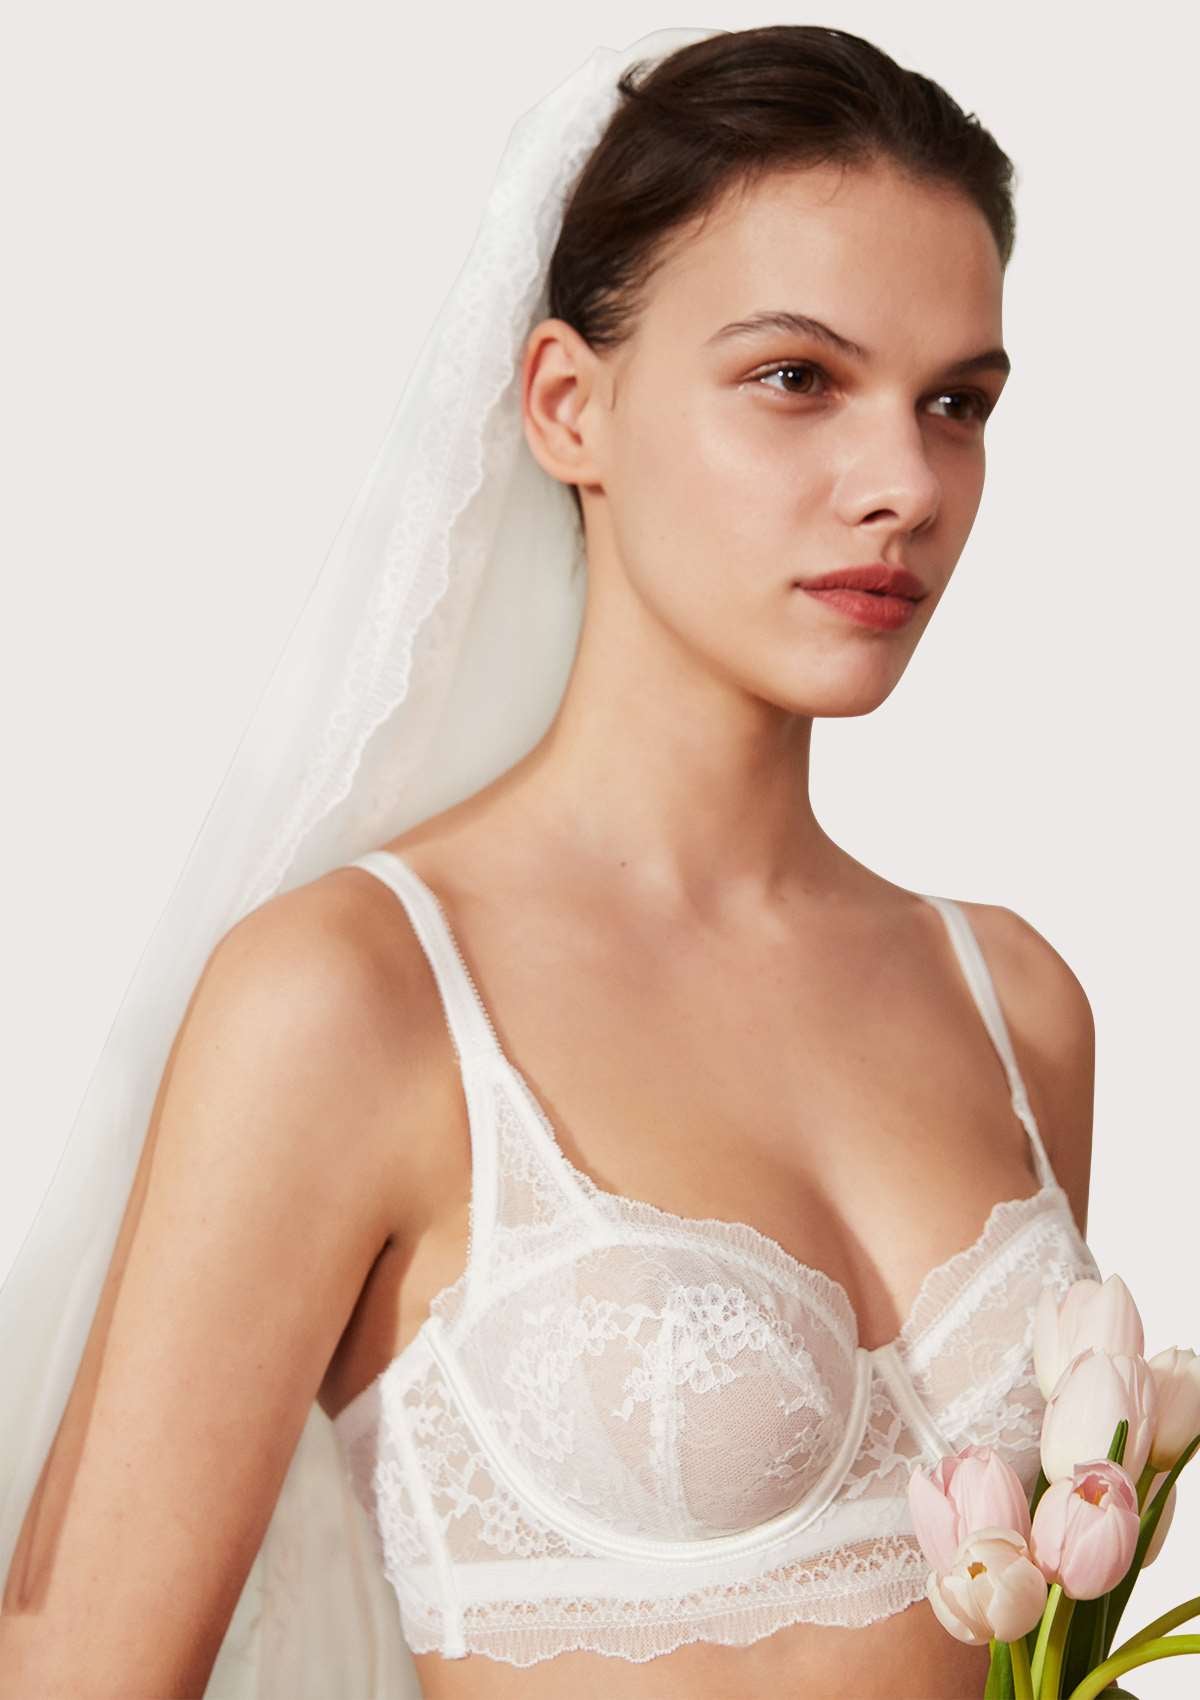 HSIA Floral Lace Unlined Bridal Romantic Balconette Bra Panty Set  - White / 36 / C